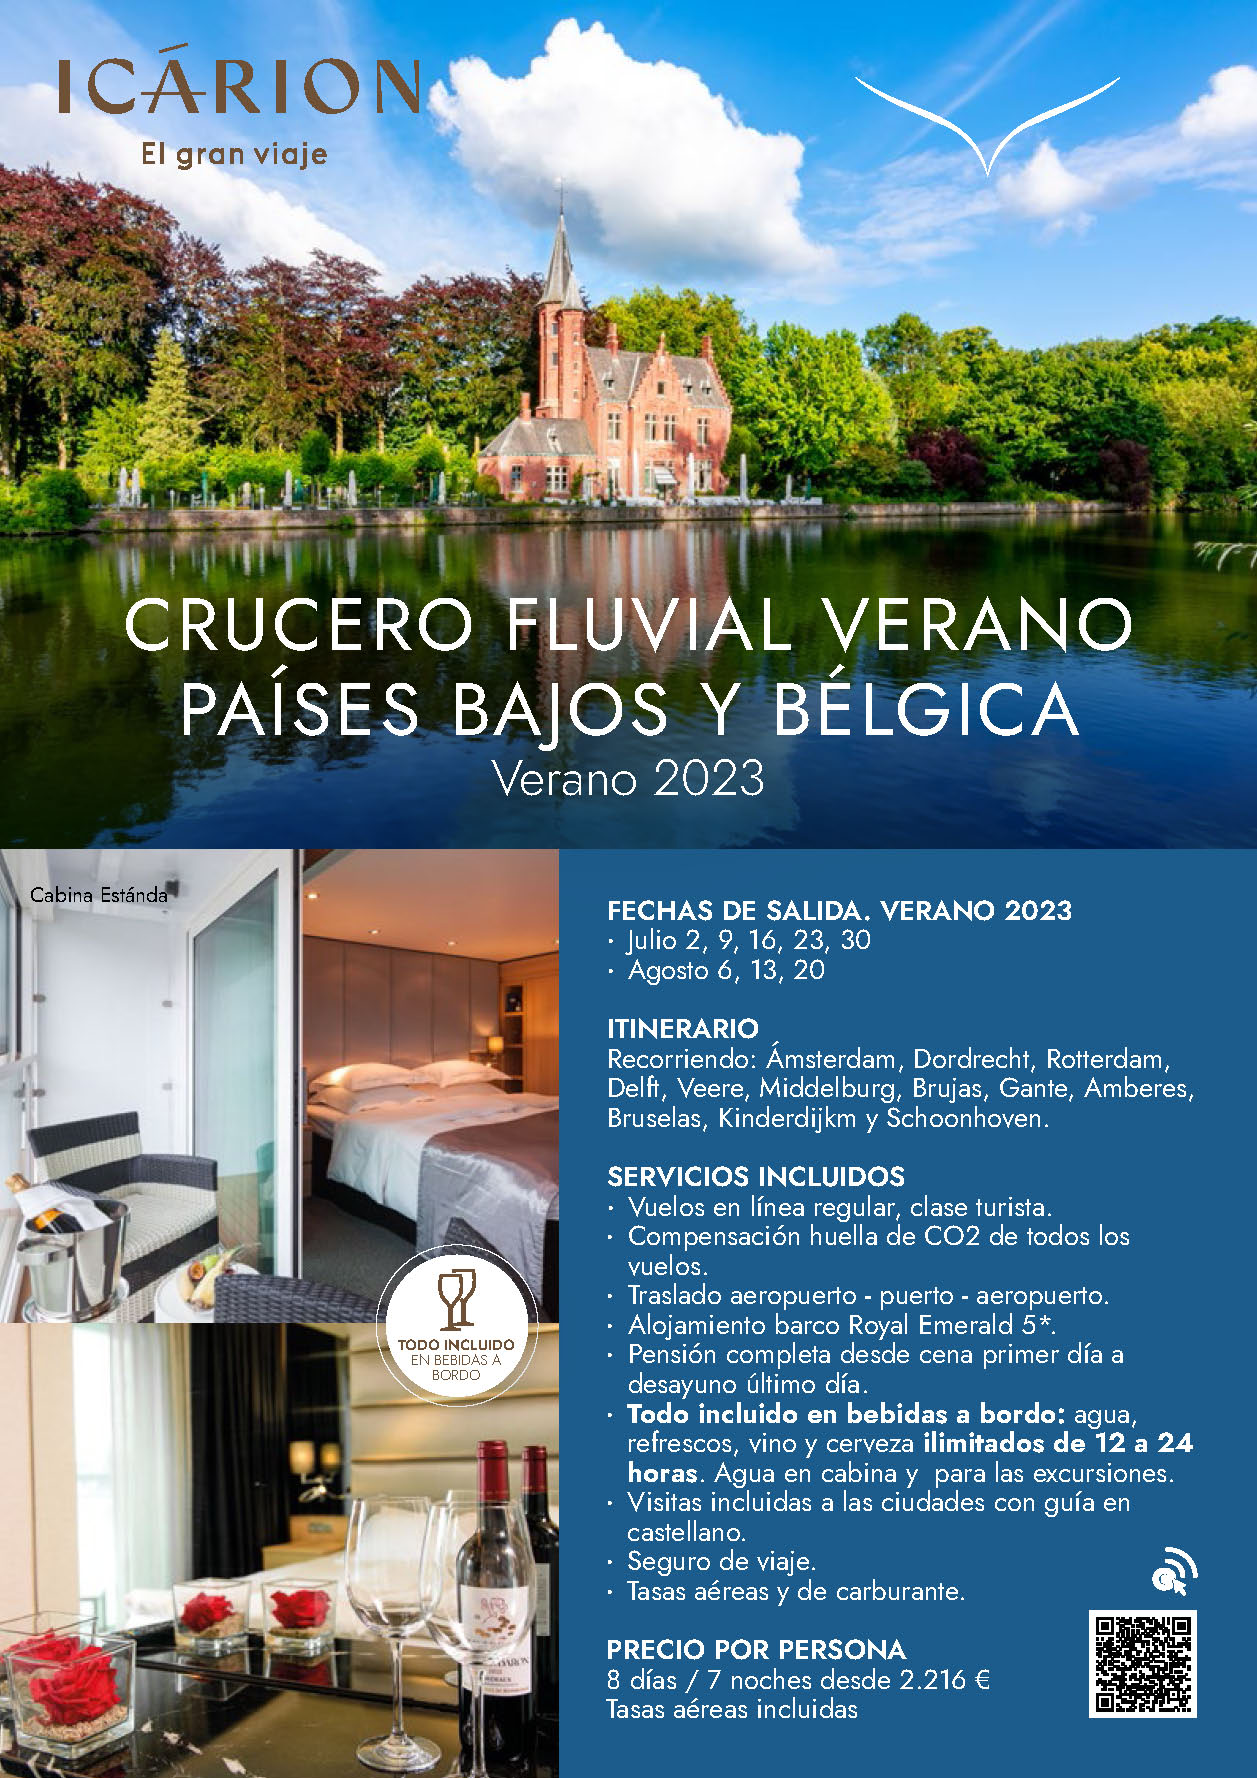 Oferta Icarion Verano 2023 Crucero Fluvial Flandes y Paises Bajos 8 dias salidas desde Madrid Barcelona Bilbao Valencia Malaga